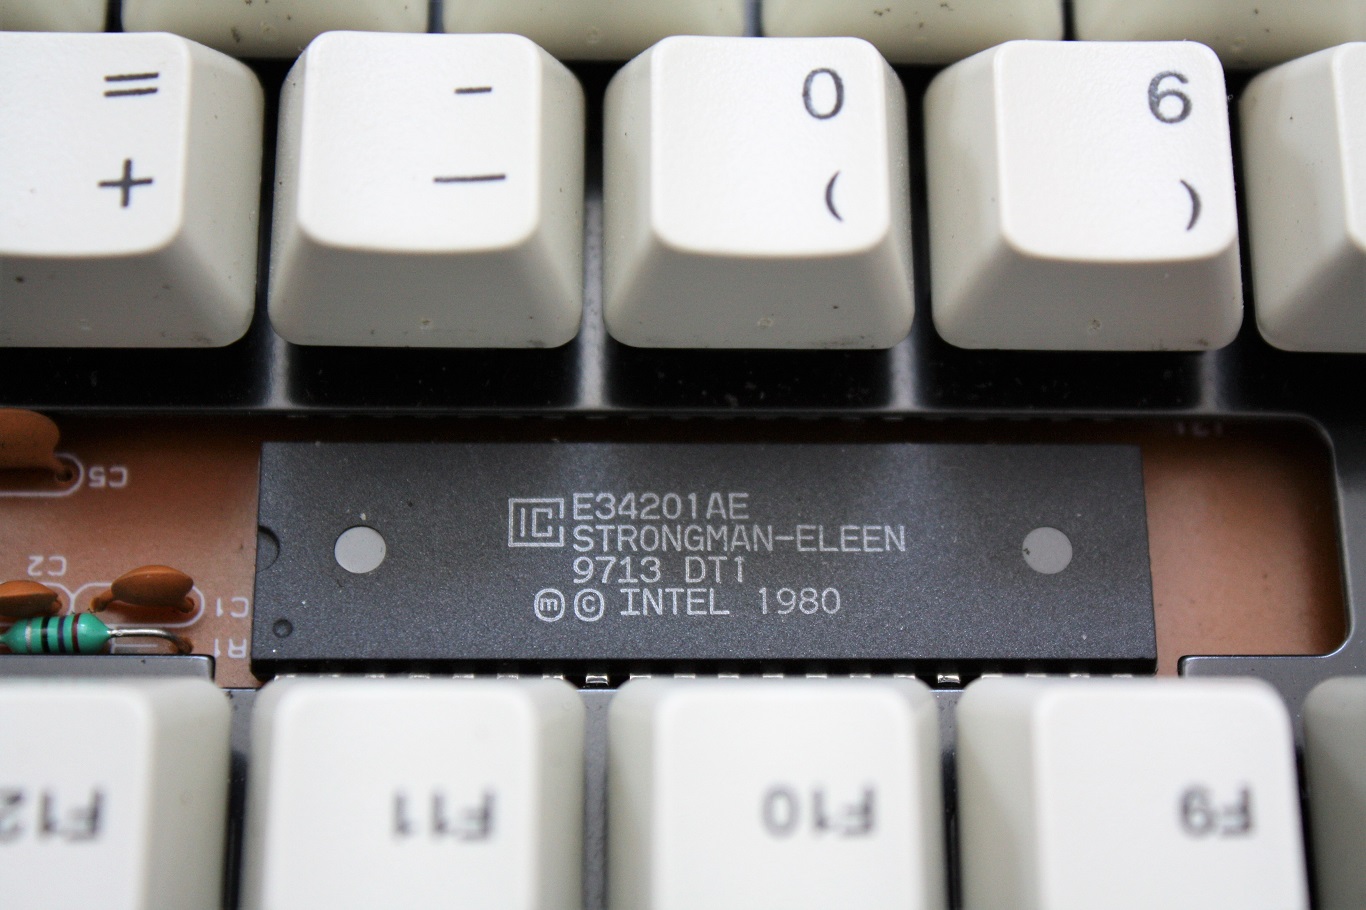 Prism N7 - keyboard controller dated 13th week of 1997